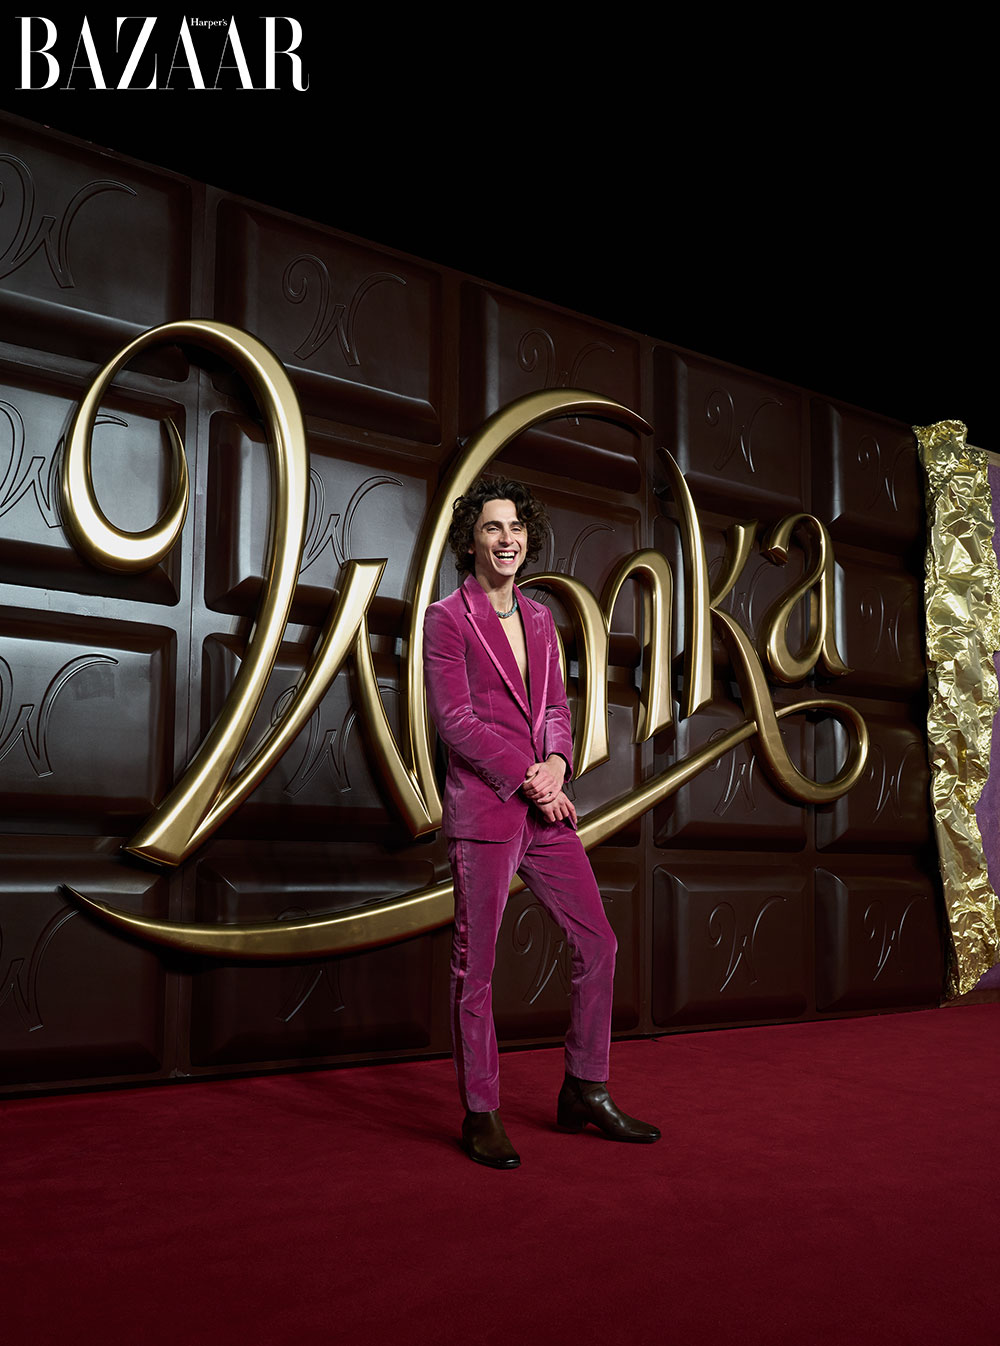 Timotheé diện vòng cổ Cartier do chính anh tham gia sáng tạo phim Wonka